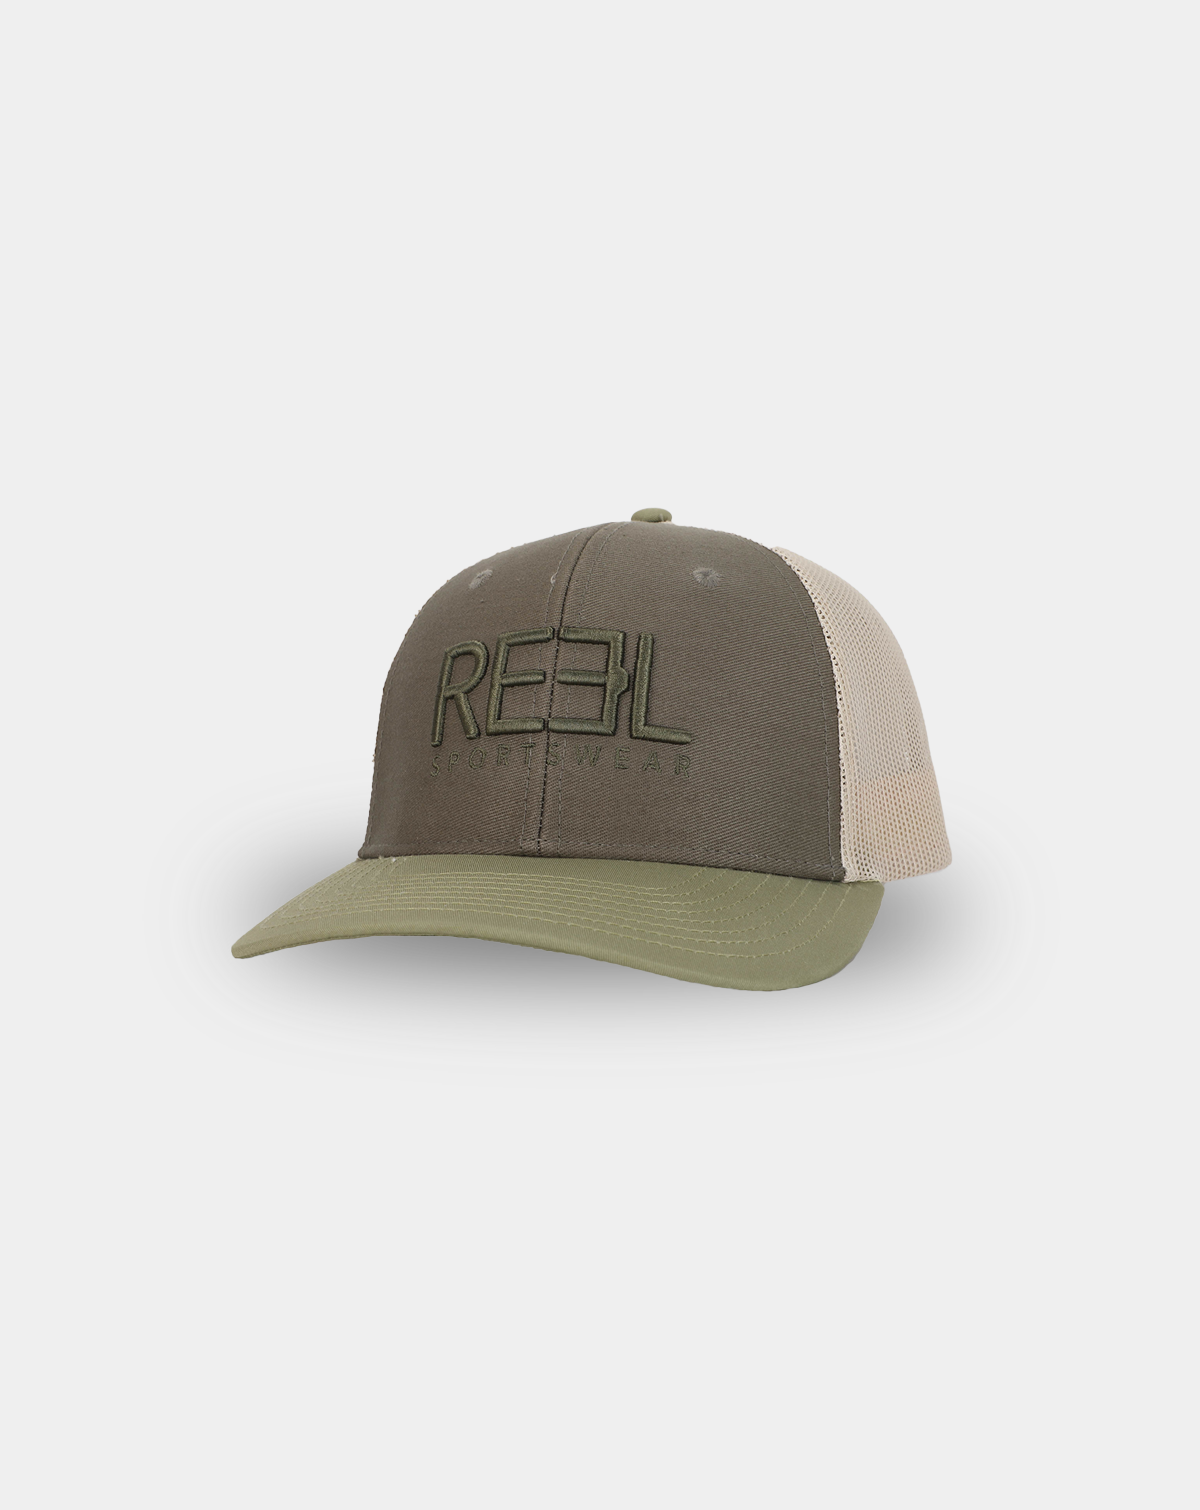 Legacy Trucker Cap - Reel sportswear